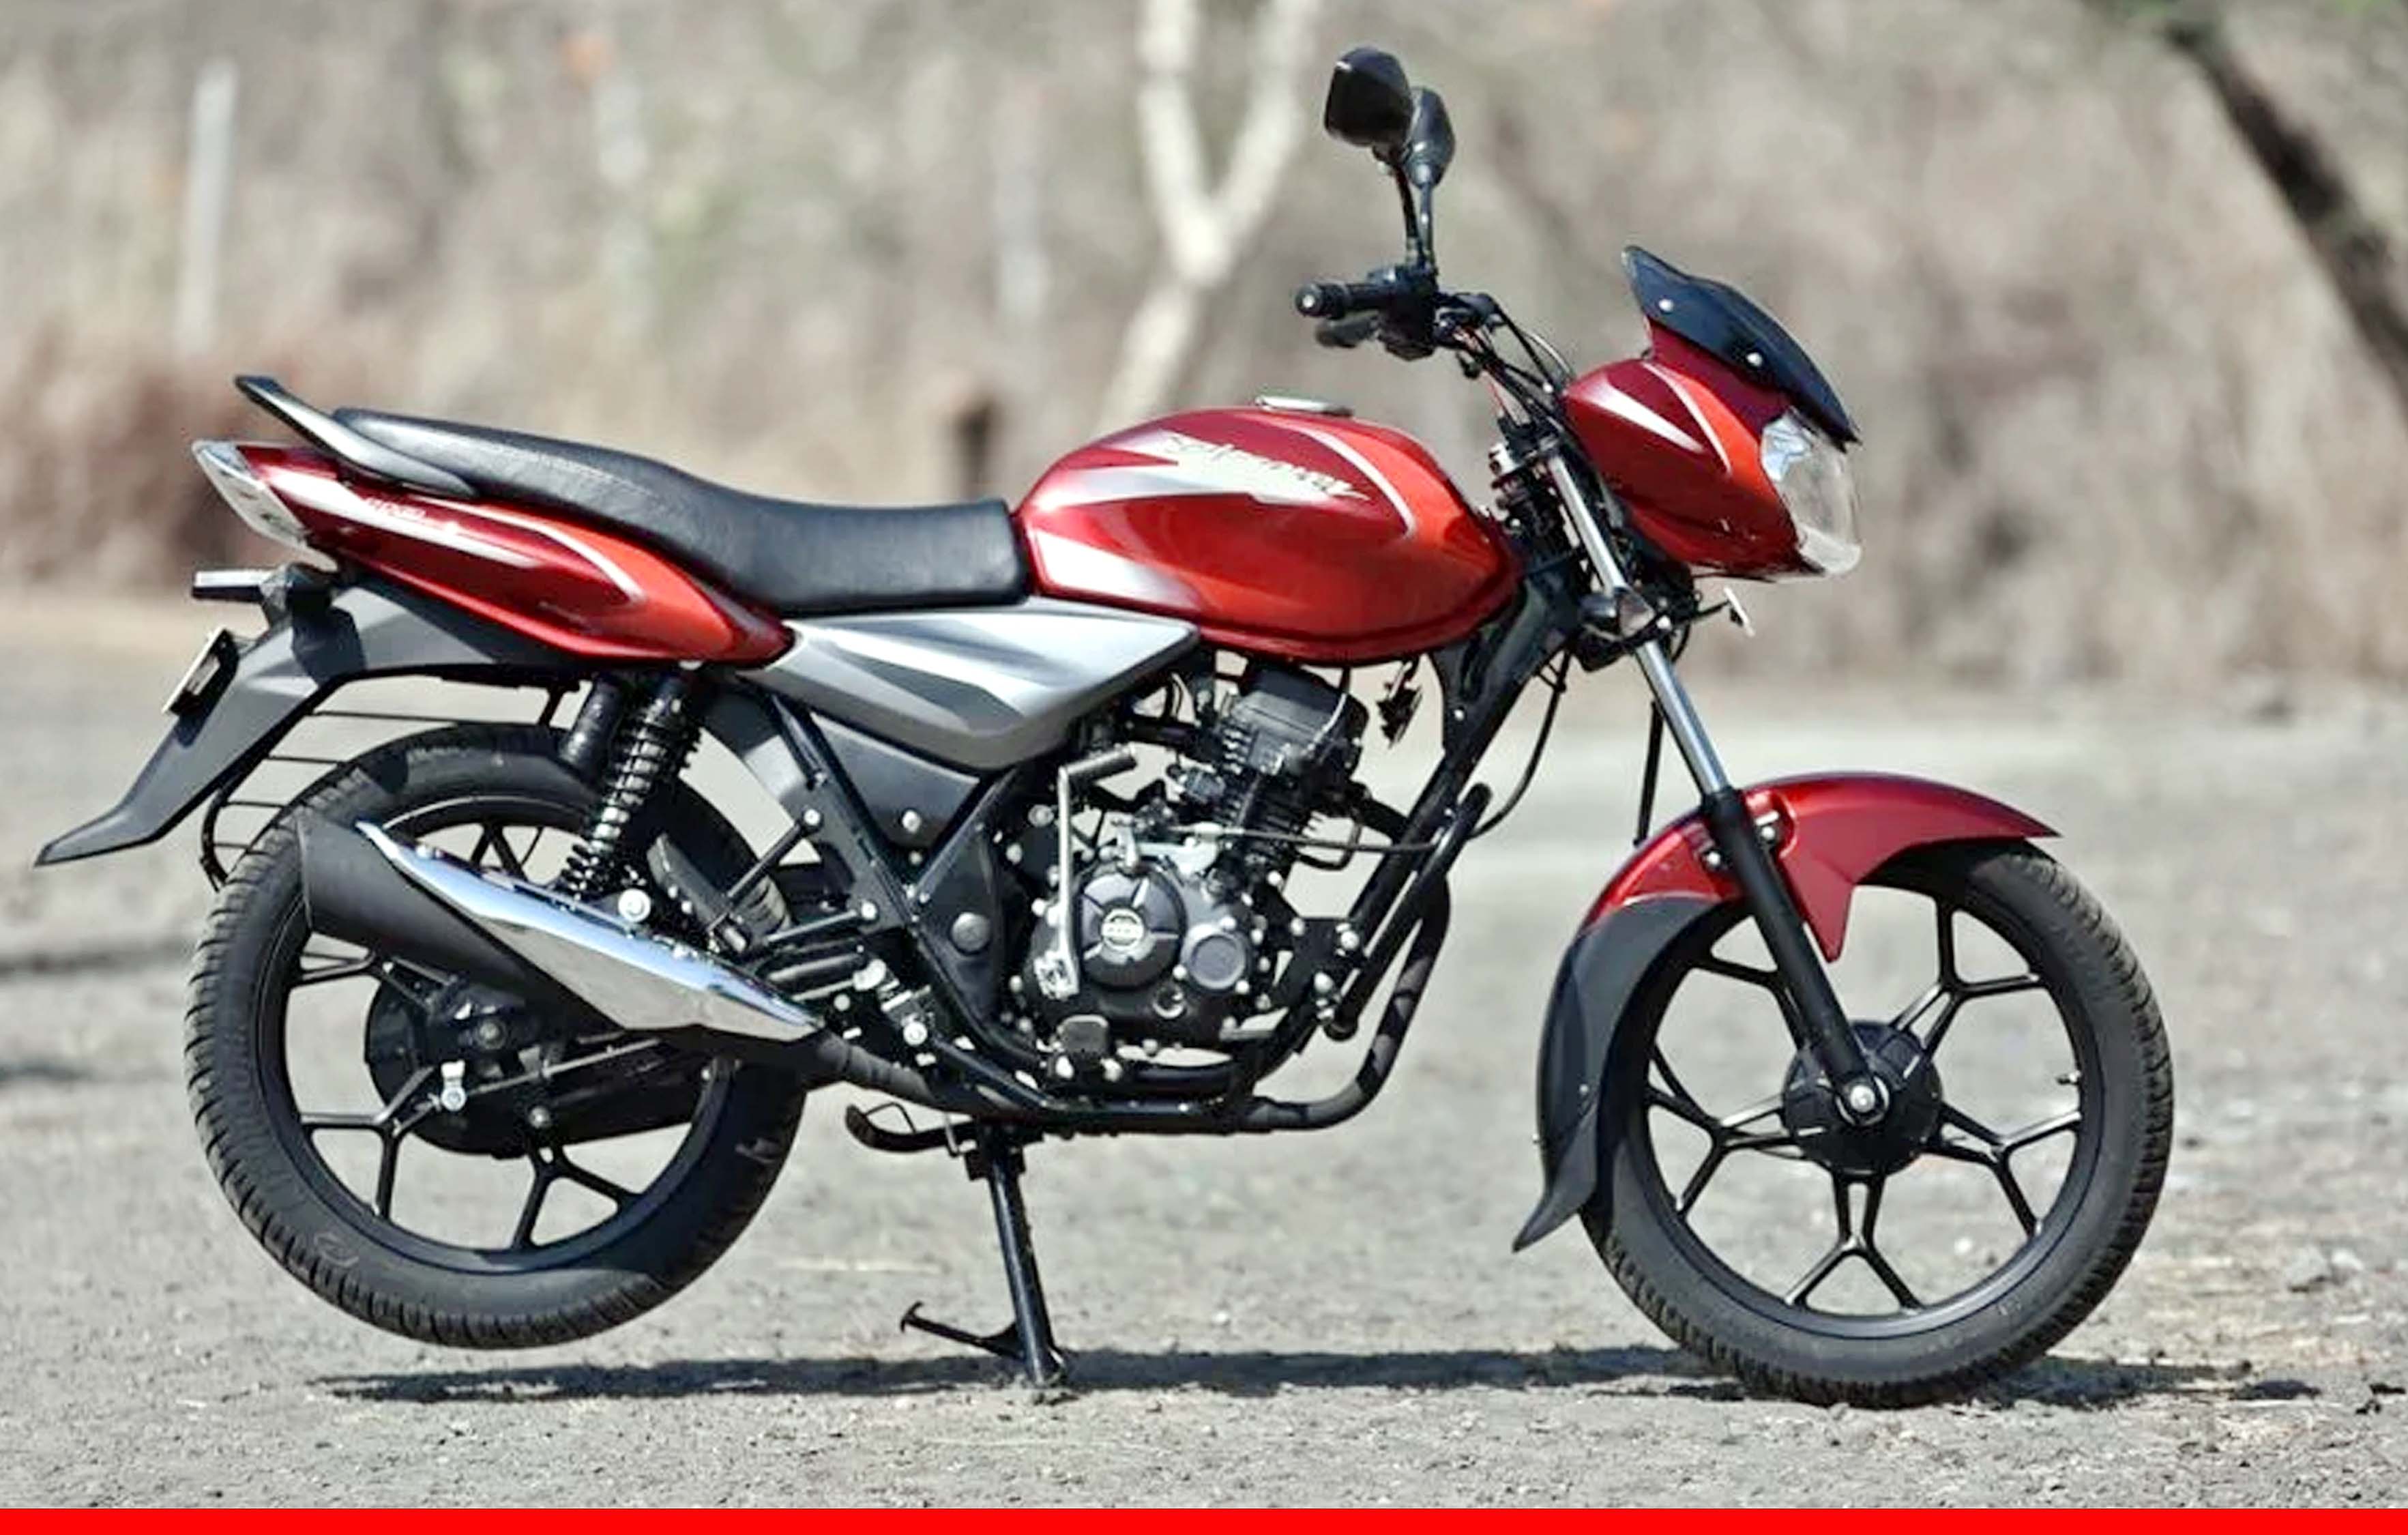 मात्र 23 हजार में खरीदें Bajaj Discover बाइक, मिल रहे हैं ढेरो ऑफर